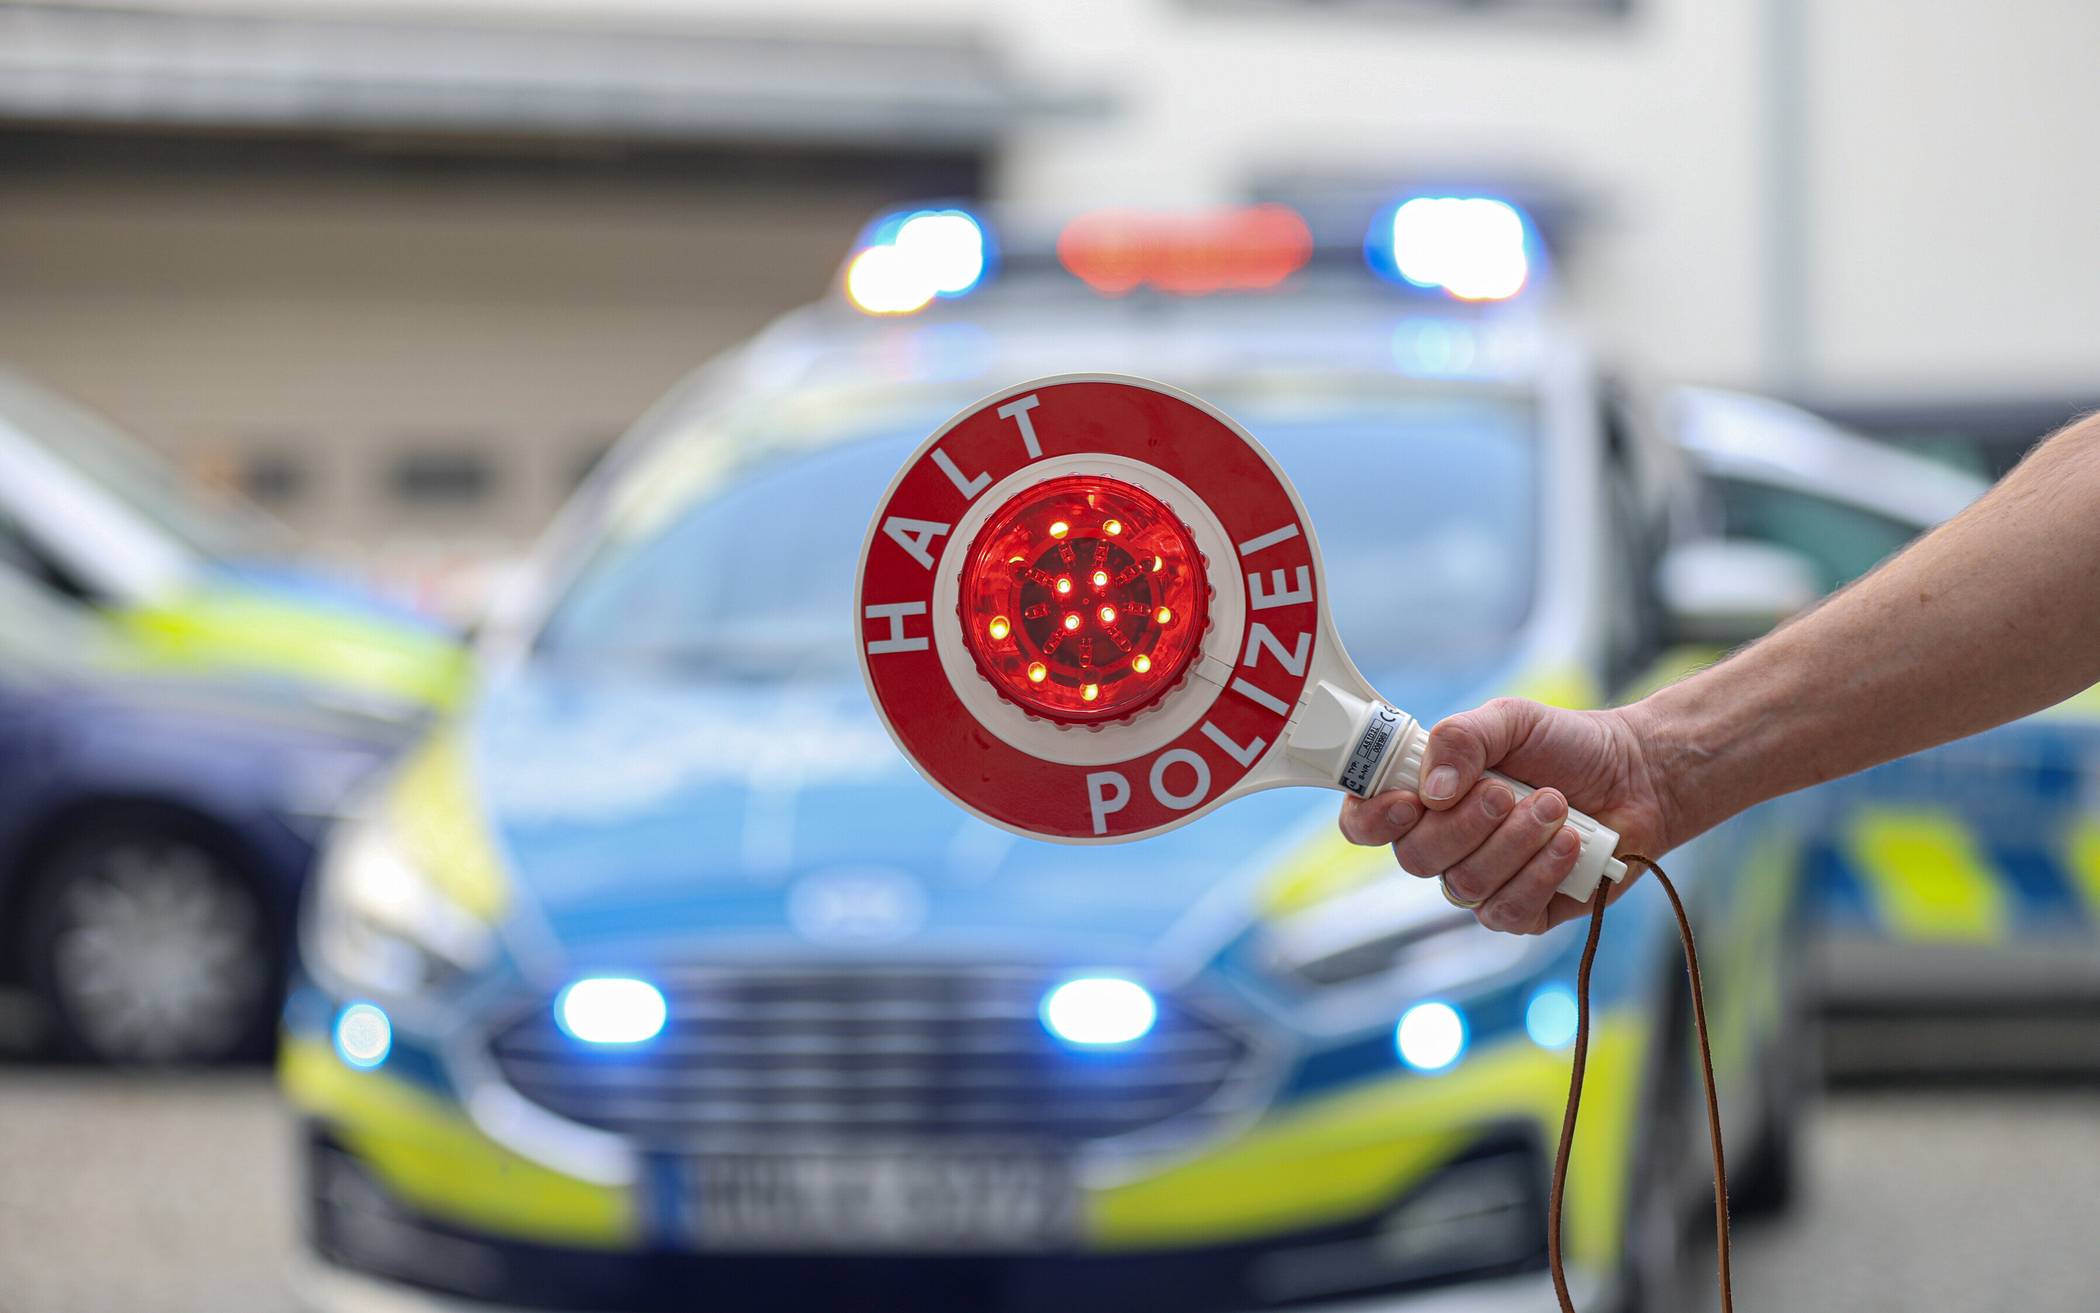 Porsche-Fahrer flüchtet vor Polizeikontrolle